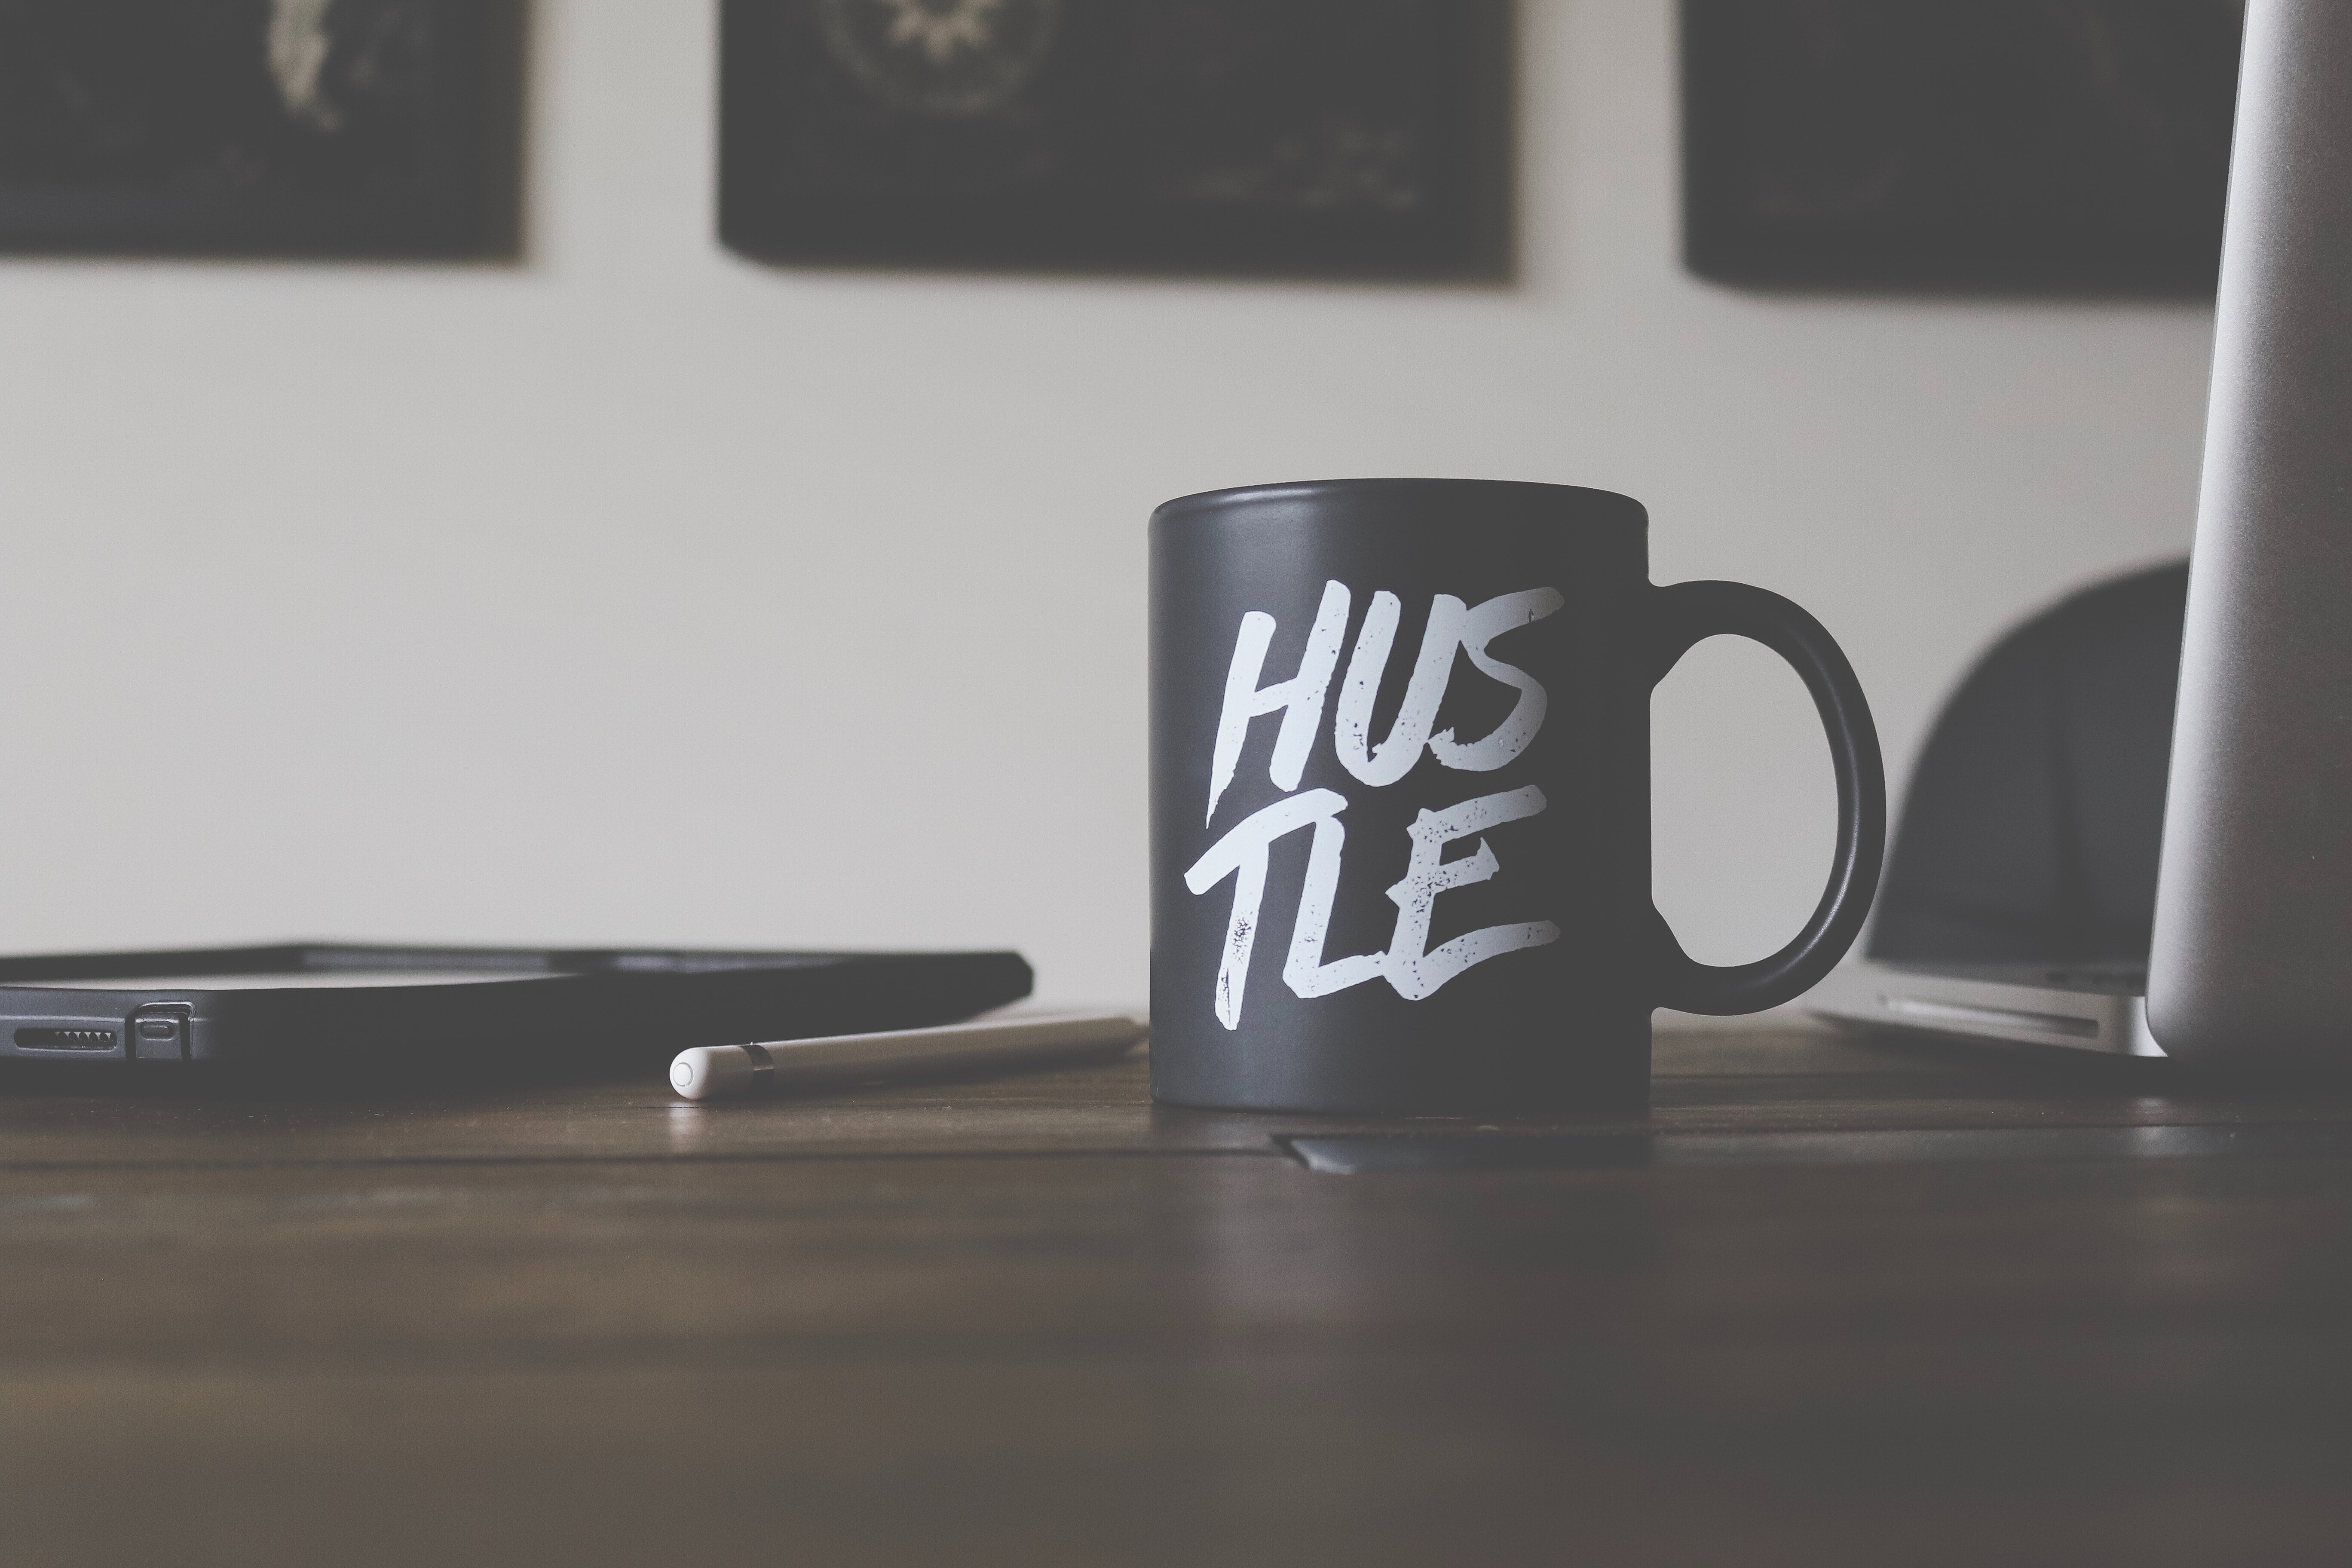 Das Foto zeigt eine Tasse mit der Aufschrift "Hustle".